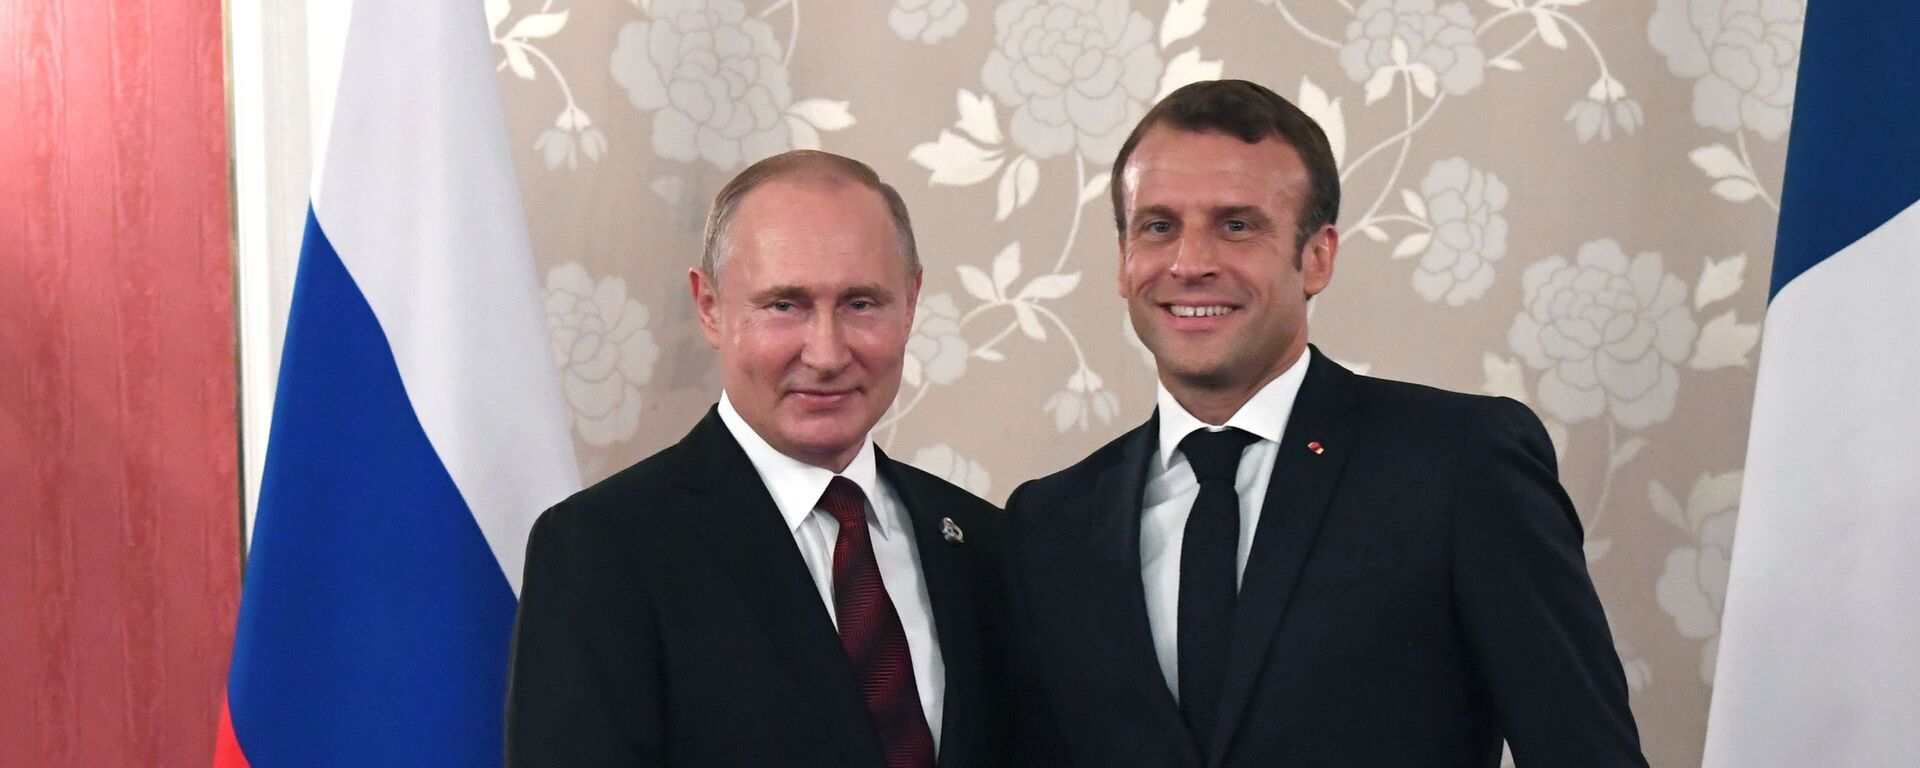 El presidente de Rusia, Vladímir Putin, y el presidente de Francia, Emmanuel Macron, durante la cumbre del G20 - Sputnik Mundo, 1920, 22.03.2022